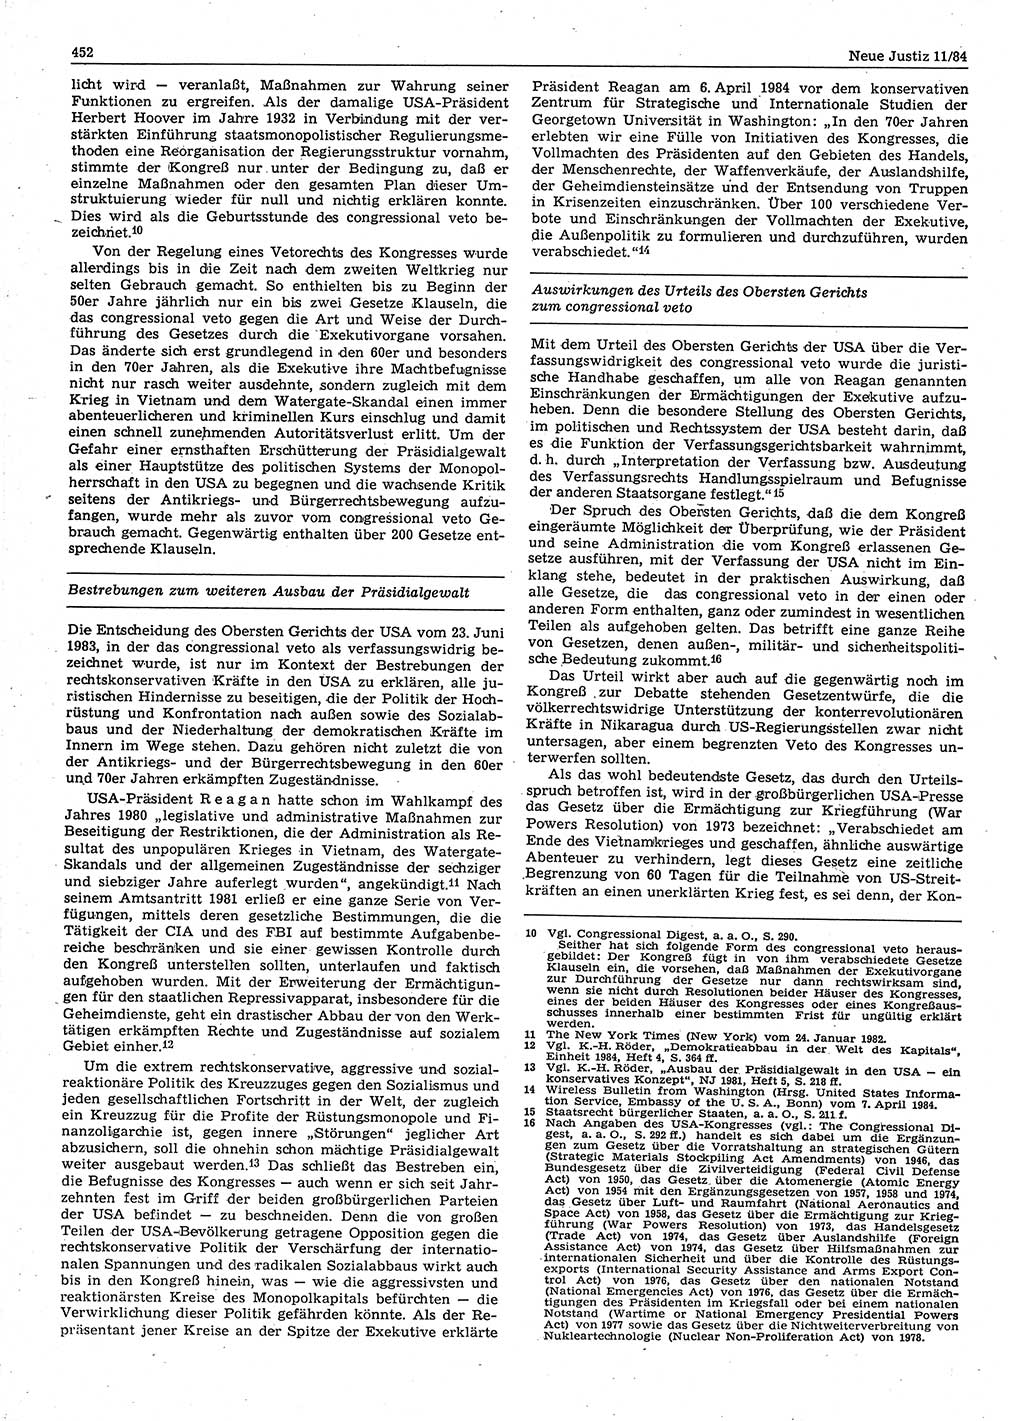 Neue Justiz (NJ), Zeitschrift für sozialistisches Recht und Gesetzlichkeit [Deutsche Demokratische Republik (DDR)], 38. Jahrgang 1984, Seite 452 (NJ DDR 1984, S. 452)